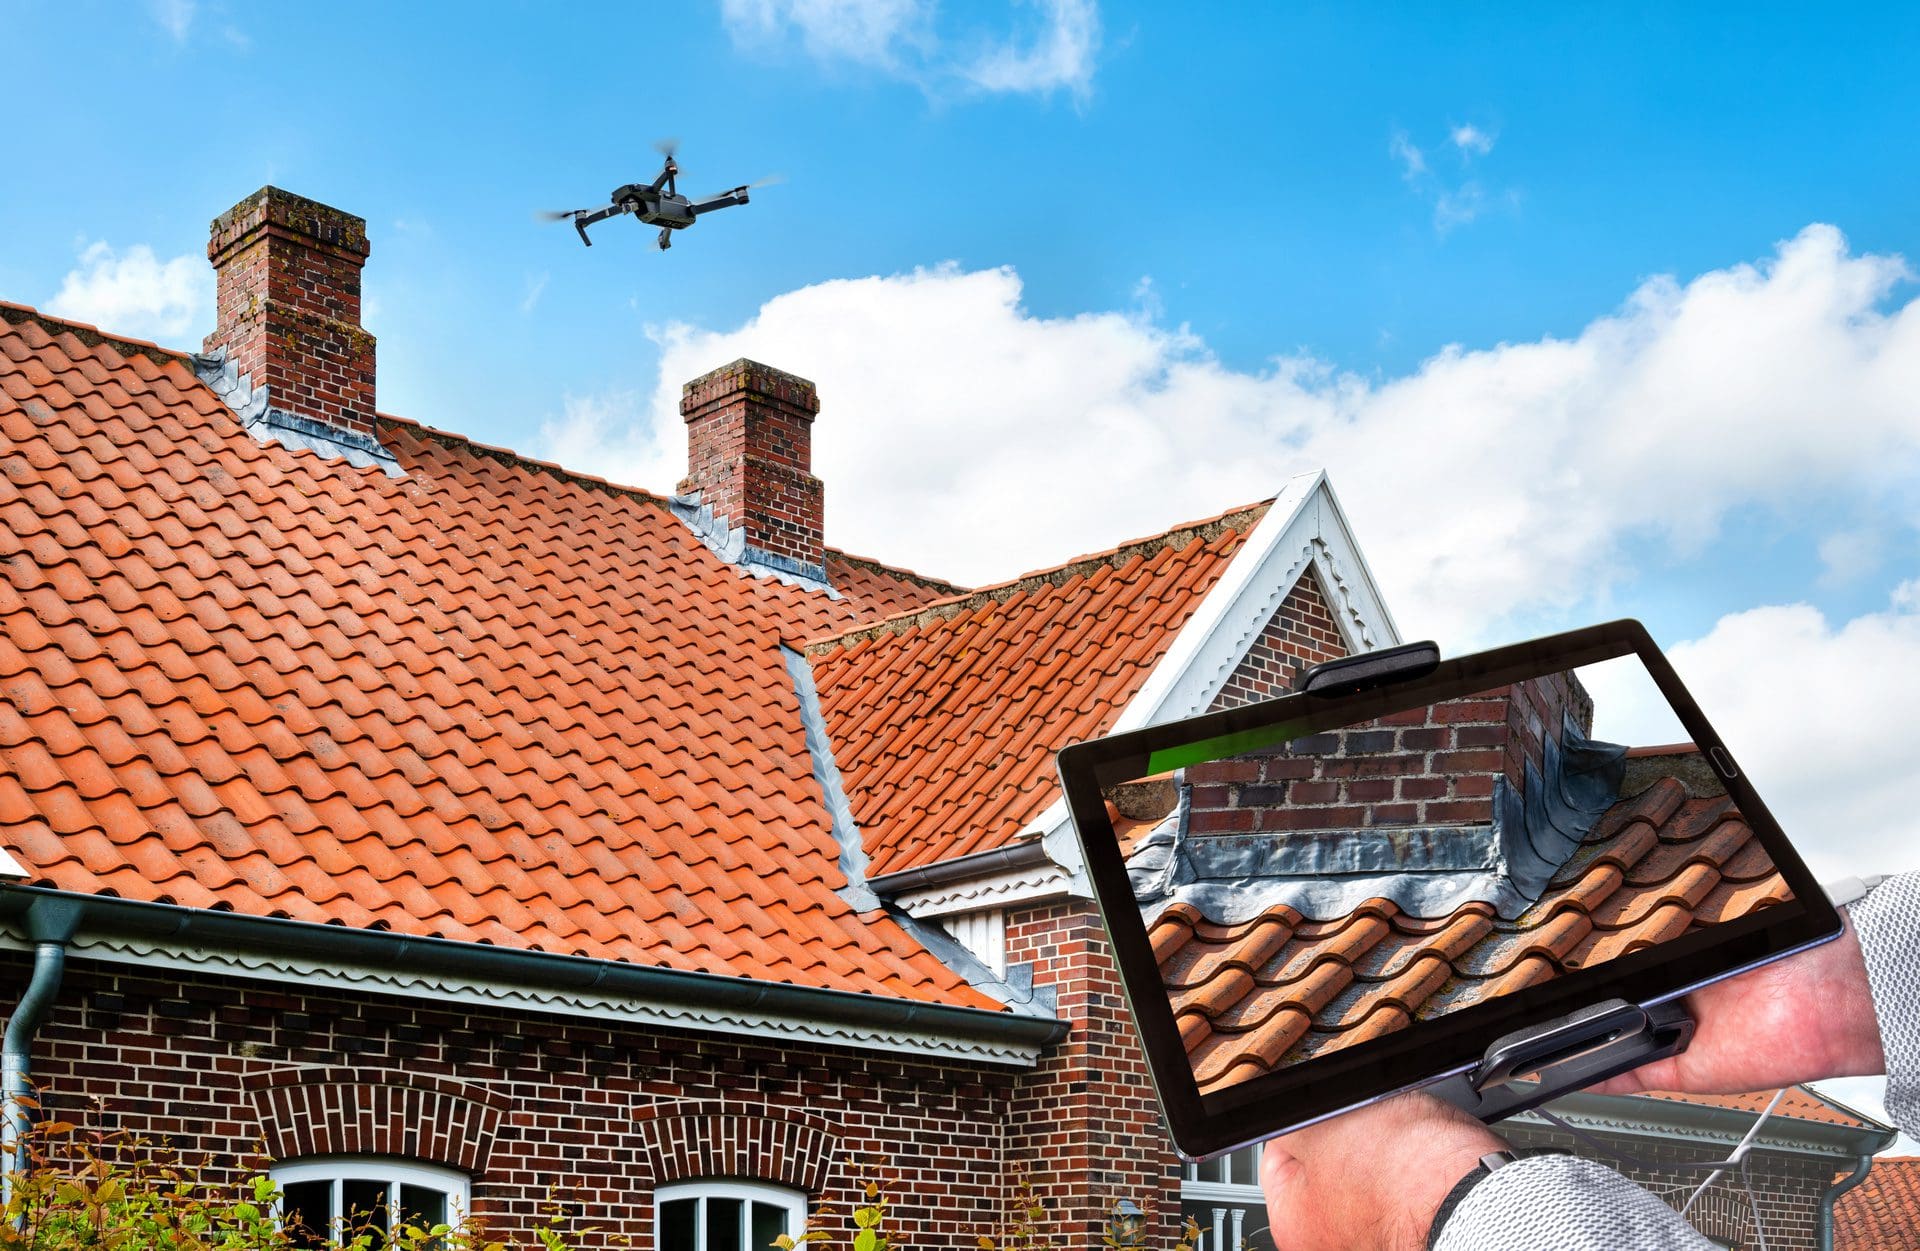 Sachverständiger für Bauschadenbewertung nutzt Drohne zur Begutachtung eines Schadens am Dach (© EKH-Pictures / stock.adobe.com)